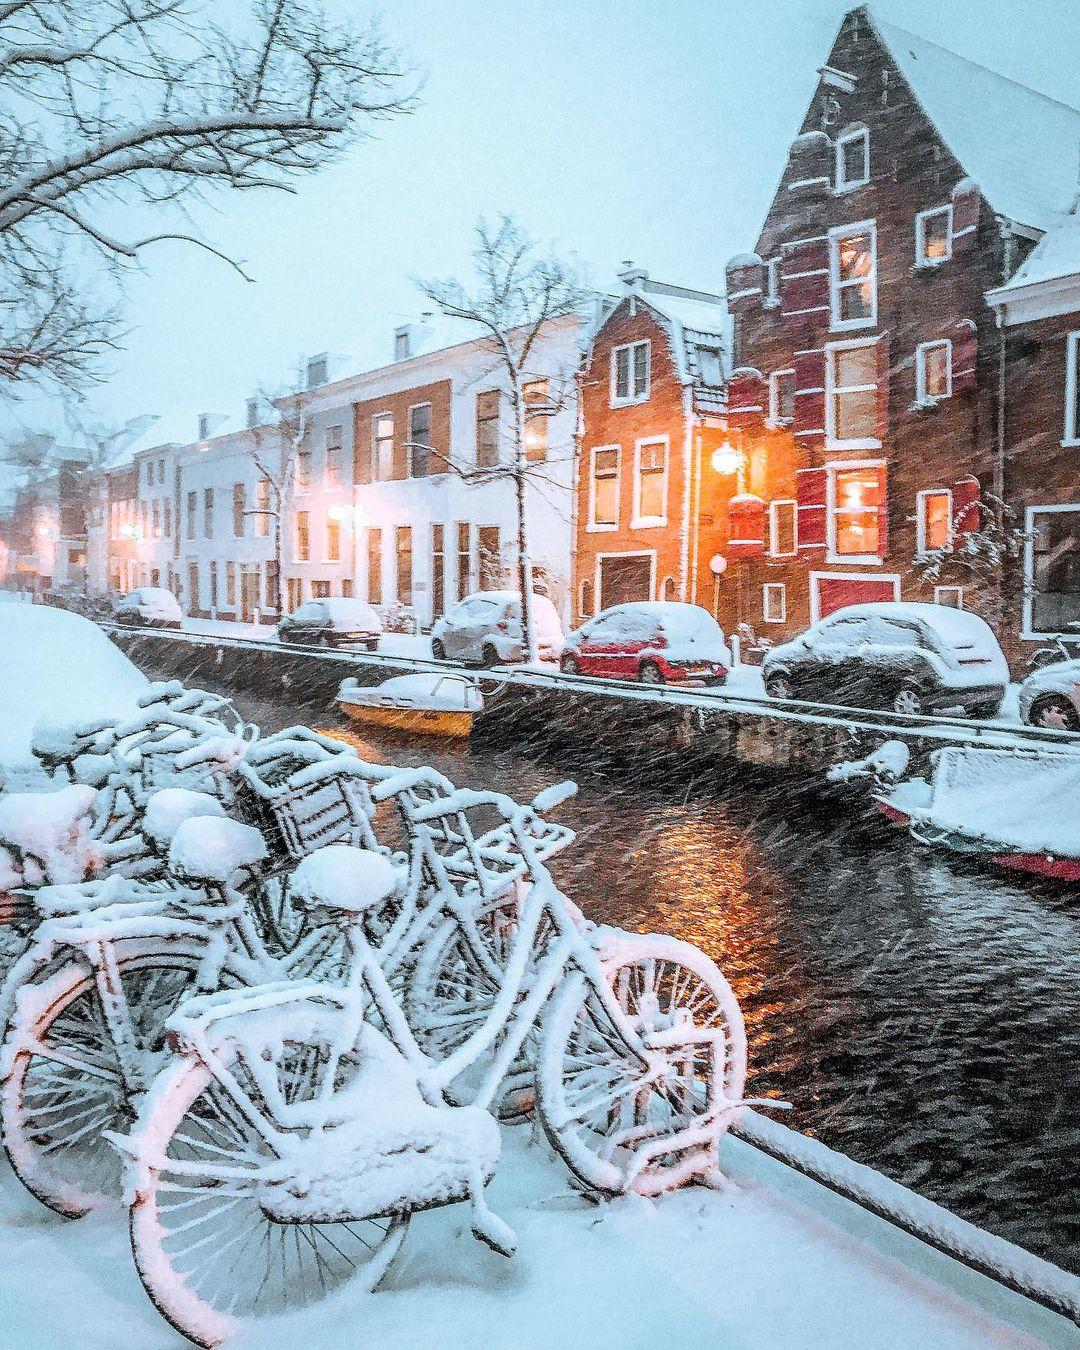  大雪中的荷兰哈勒姆，来自摄影师Brian Sweet。 